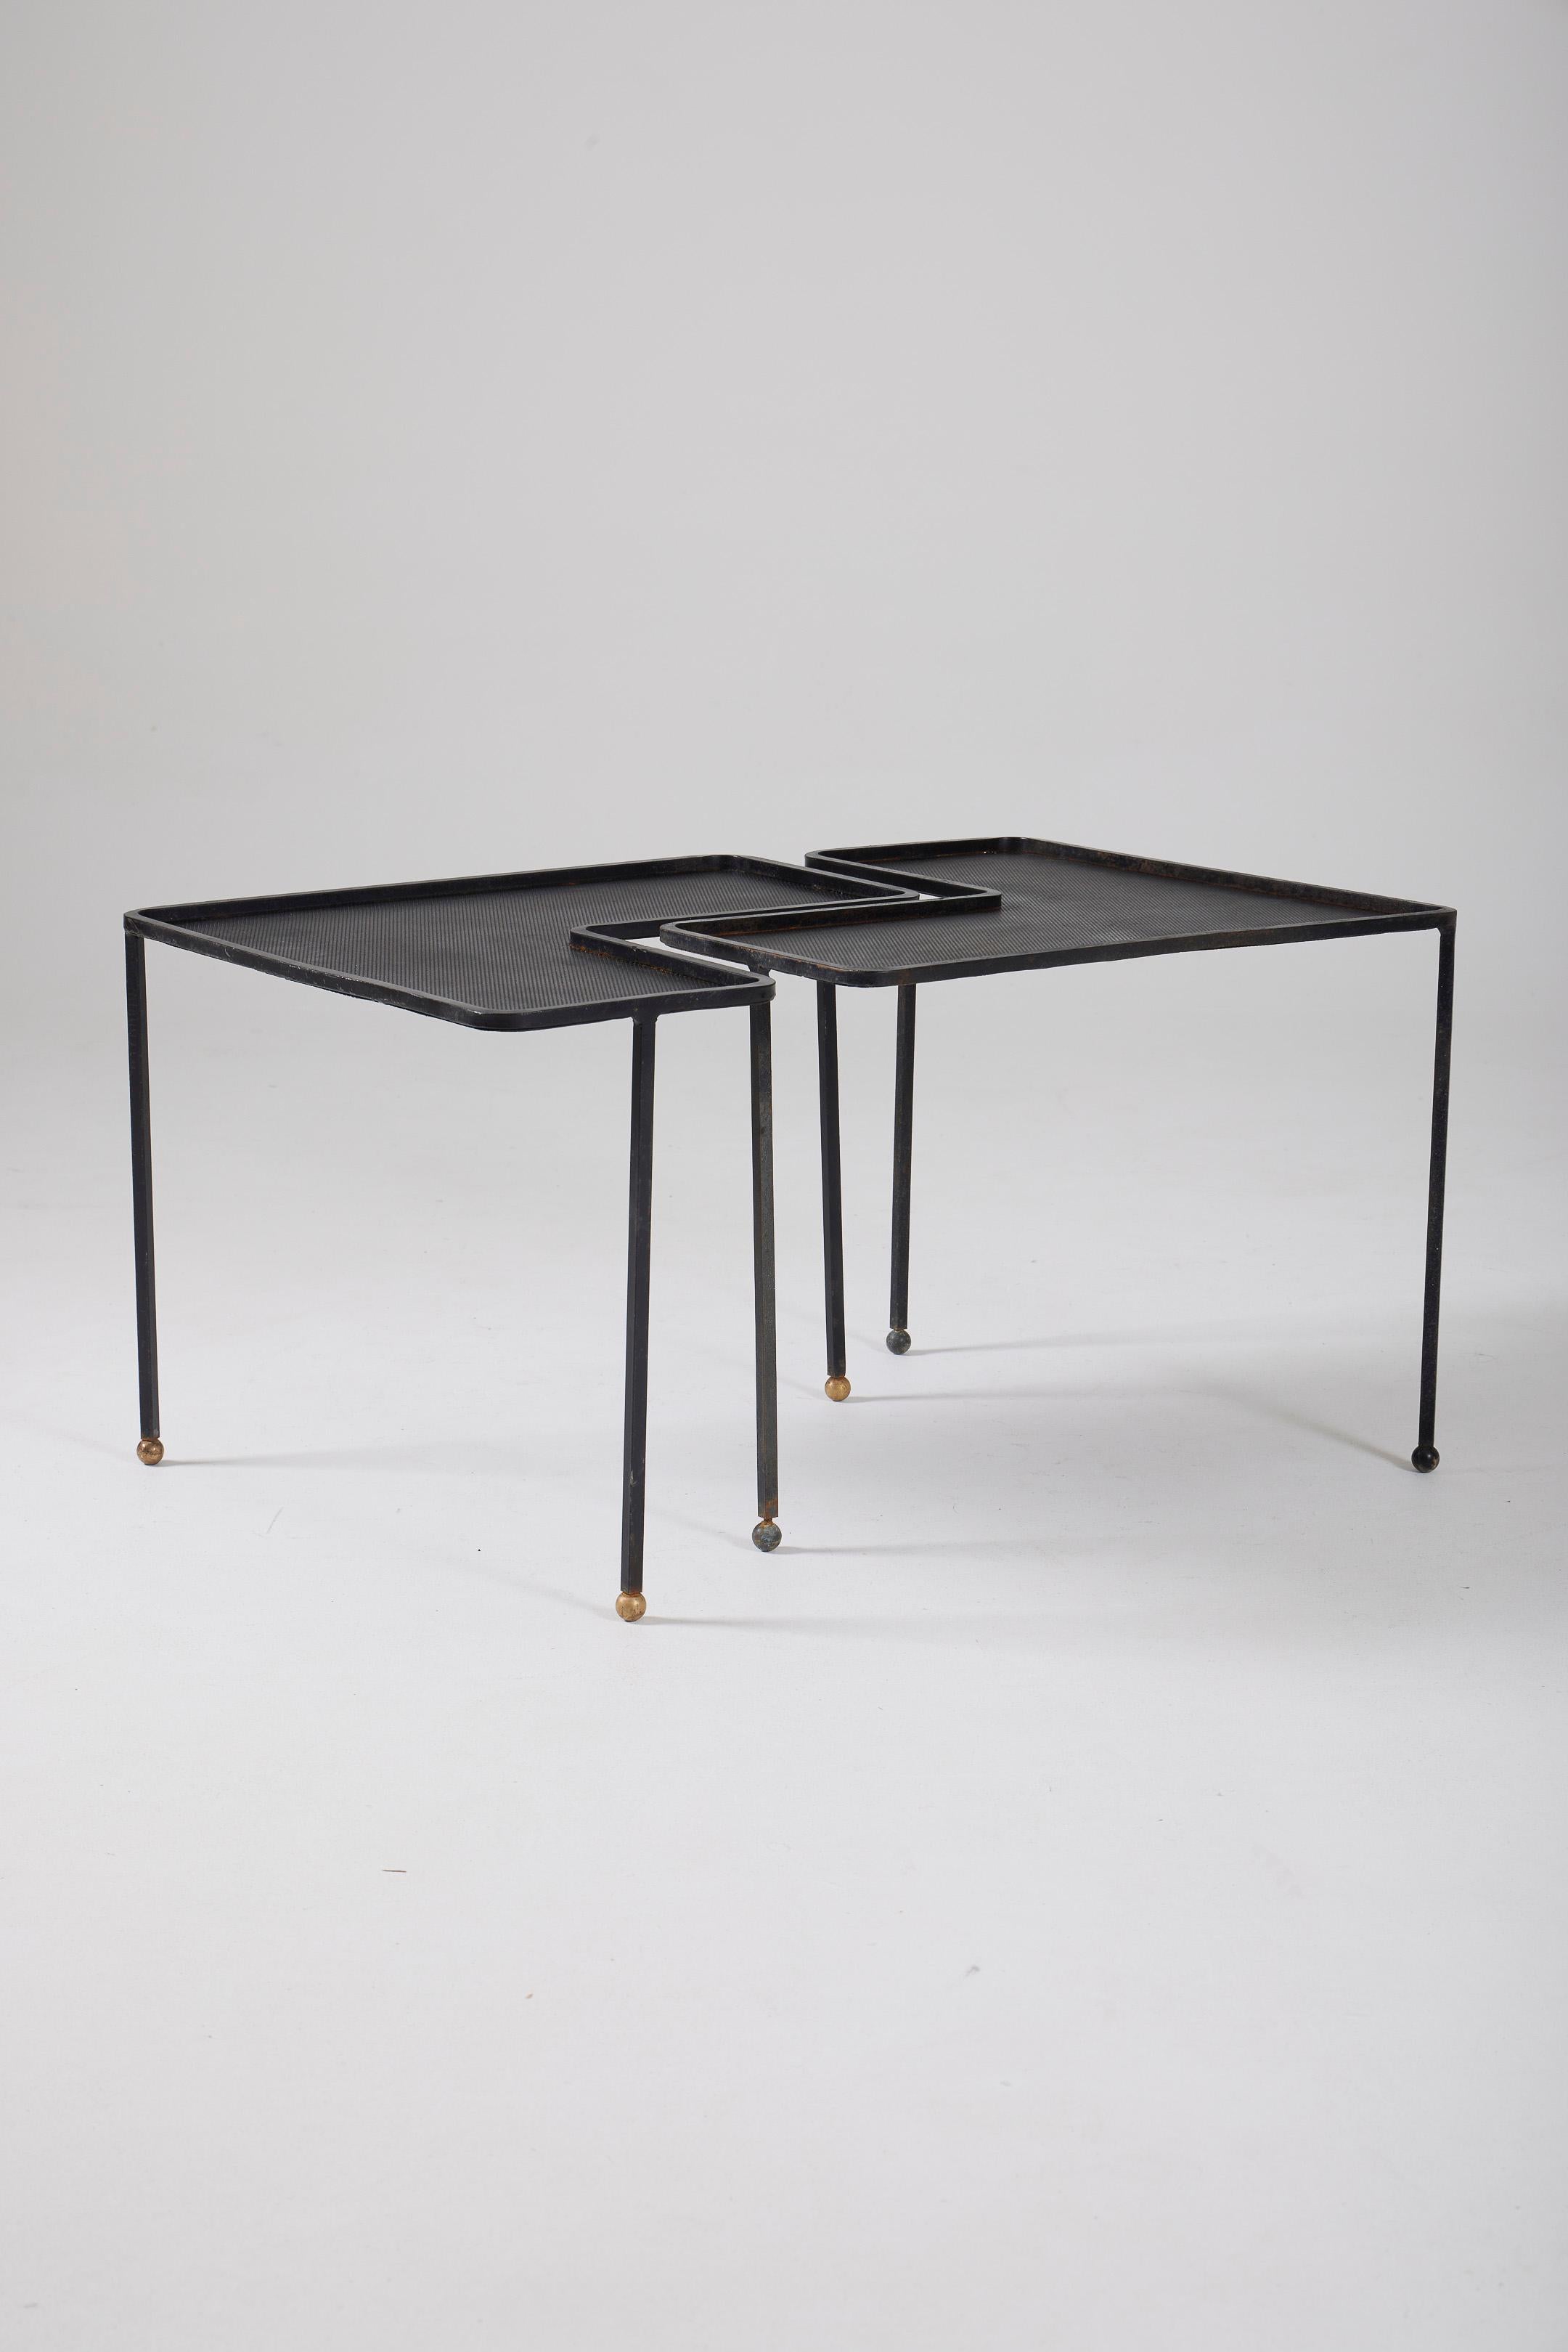 Ensemble de 2 tables modèle 'Domino' par le designer français Mathieu Matégot (1910-2001) dans les années 1950 (1953). Ces tables sont dotées d'un plateau en métal perforé noir et d'une base tubulaire en métal laqué noir. Bon état.
DV570